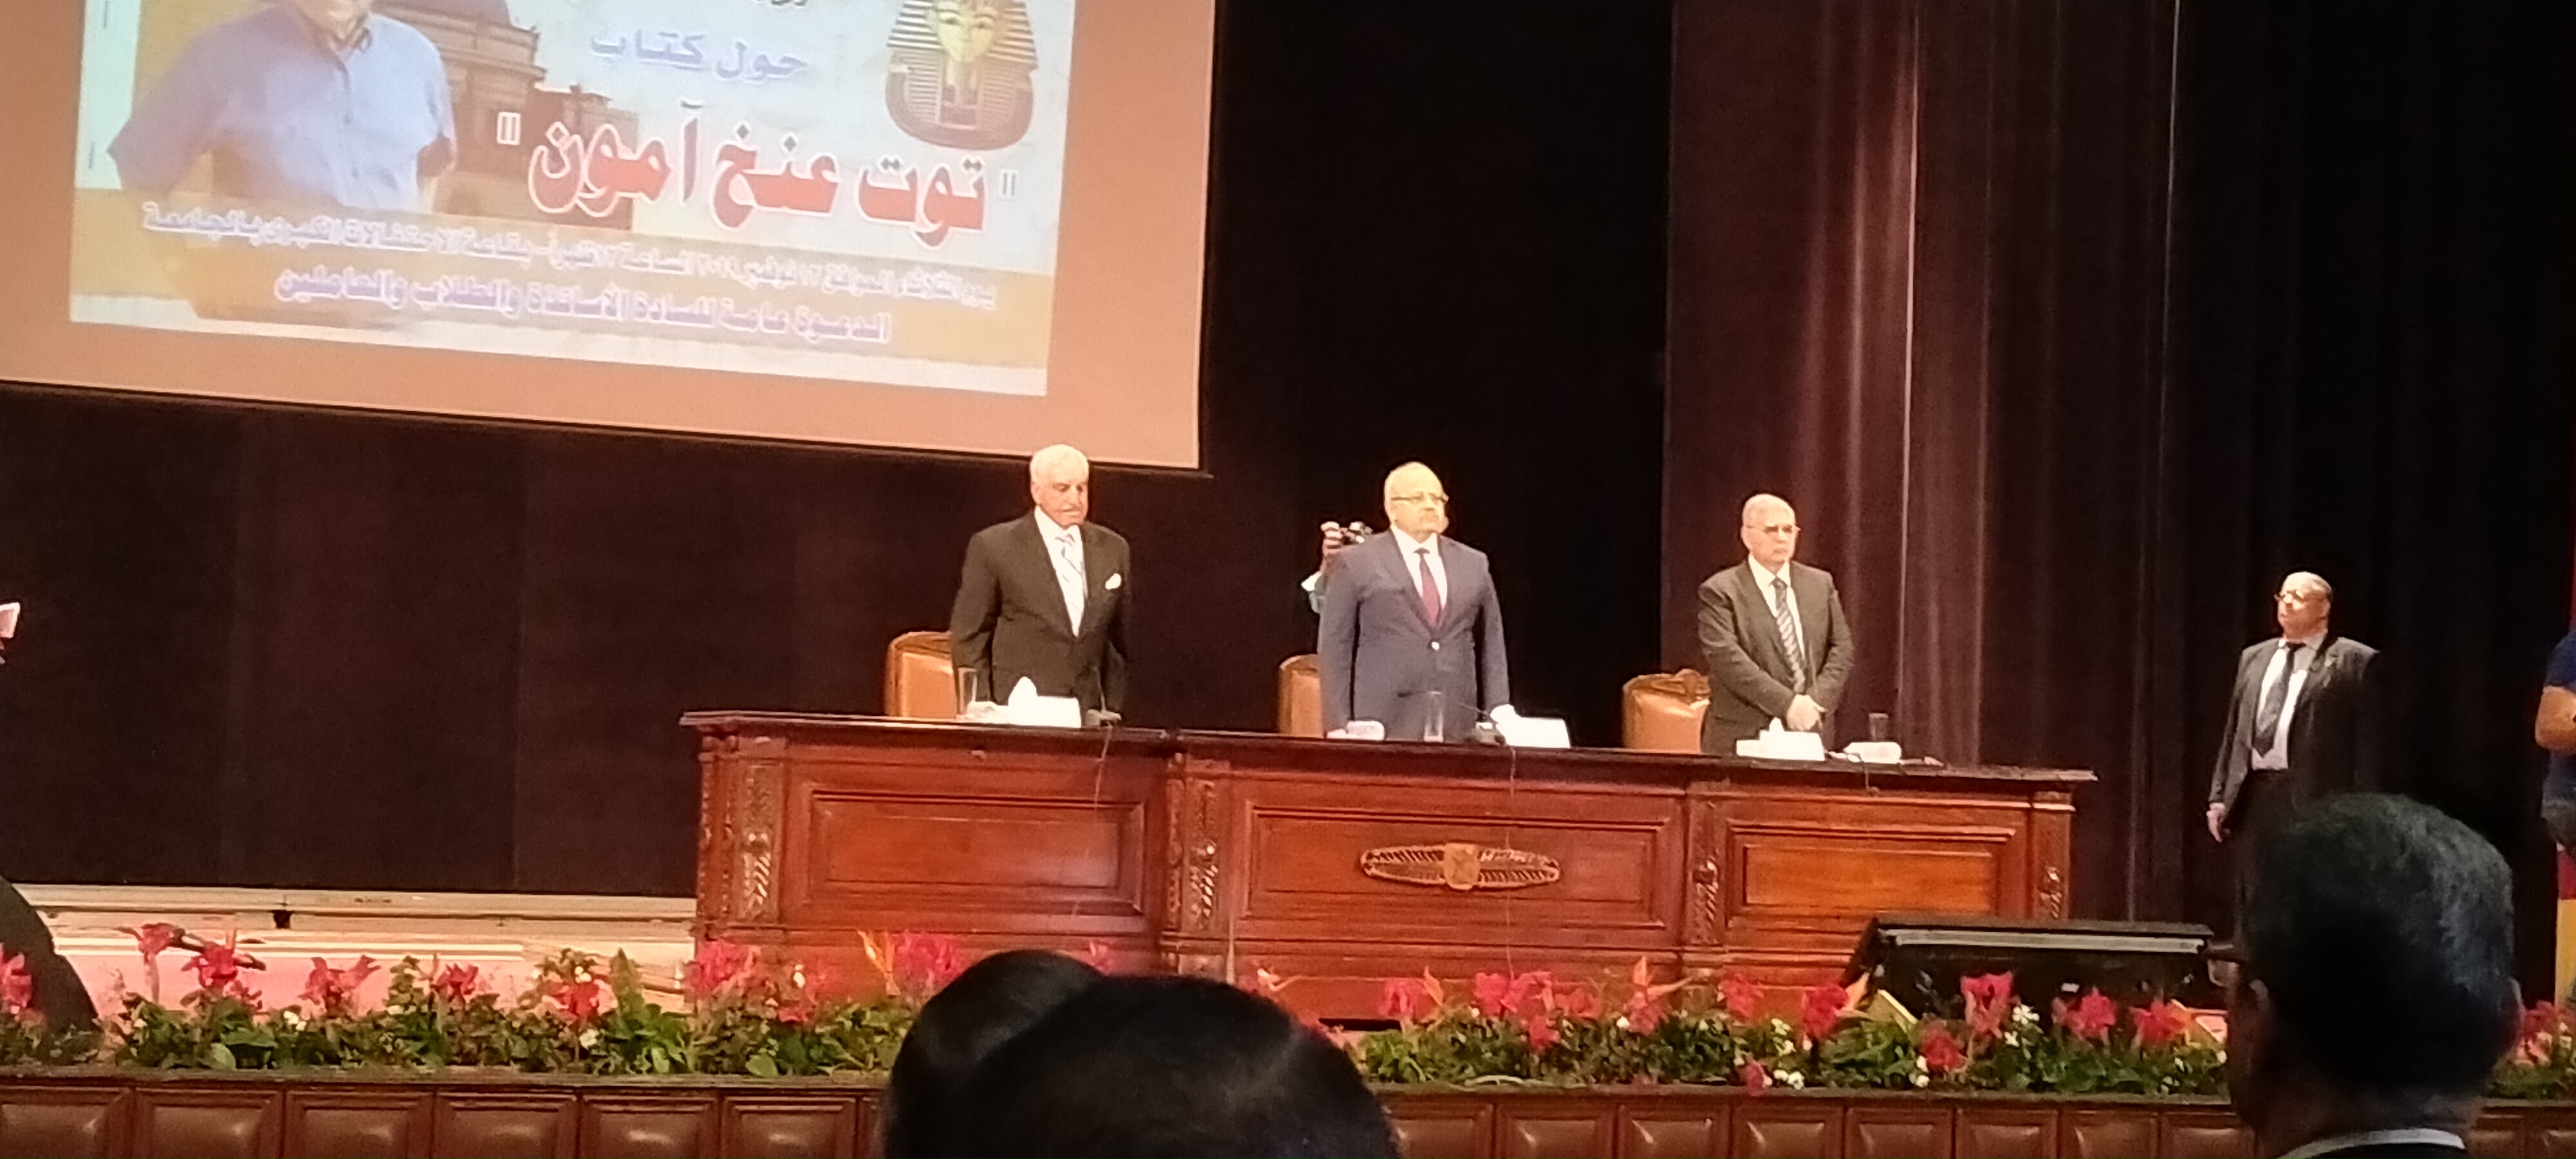 المحاضرة التى تنظمها جامعة القاهرة بحضور الدكتور زاهى حواس  (7)